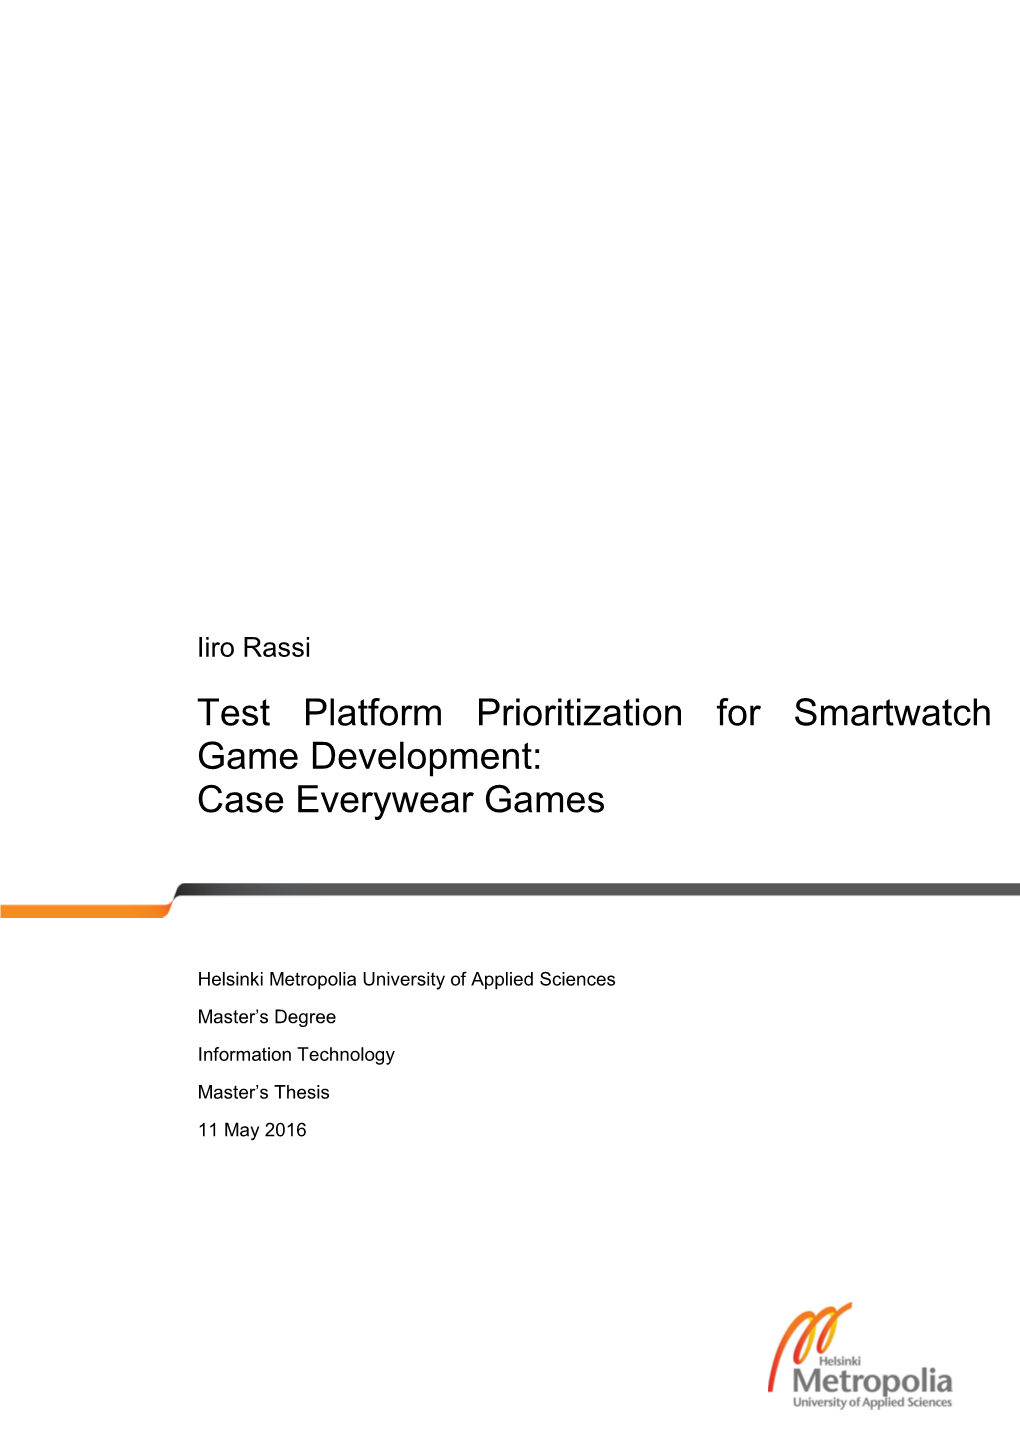 Test Platform Prioritization for Smartwatch Game Development